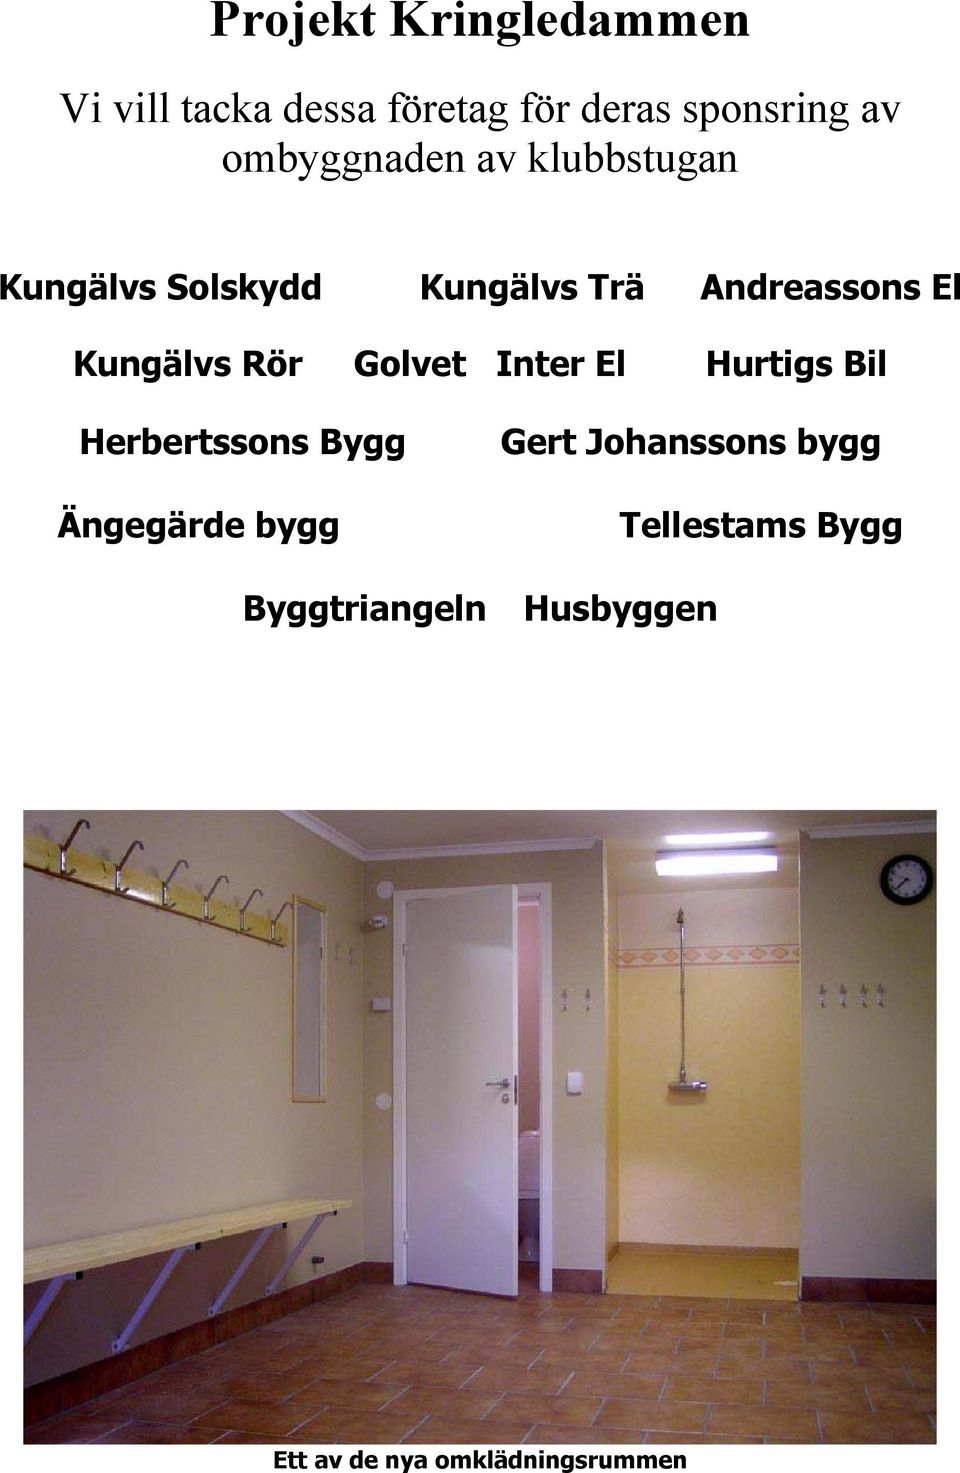 Kungälvs Rör Golvet Inter El Hurtigs Bil Herbertssons Bygg Ängegärde bygg